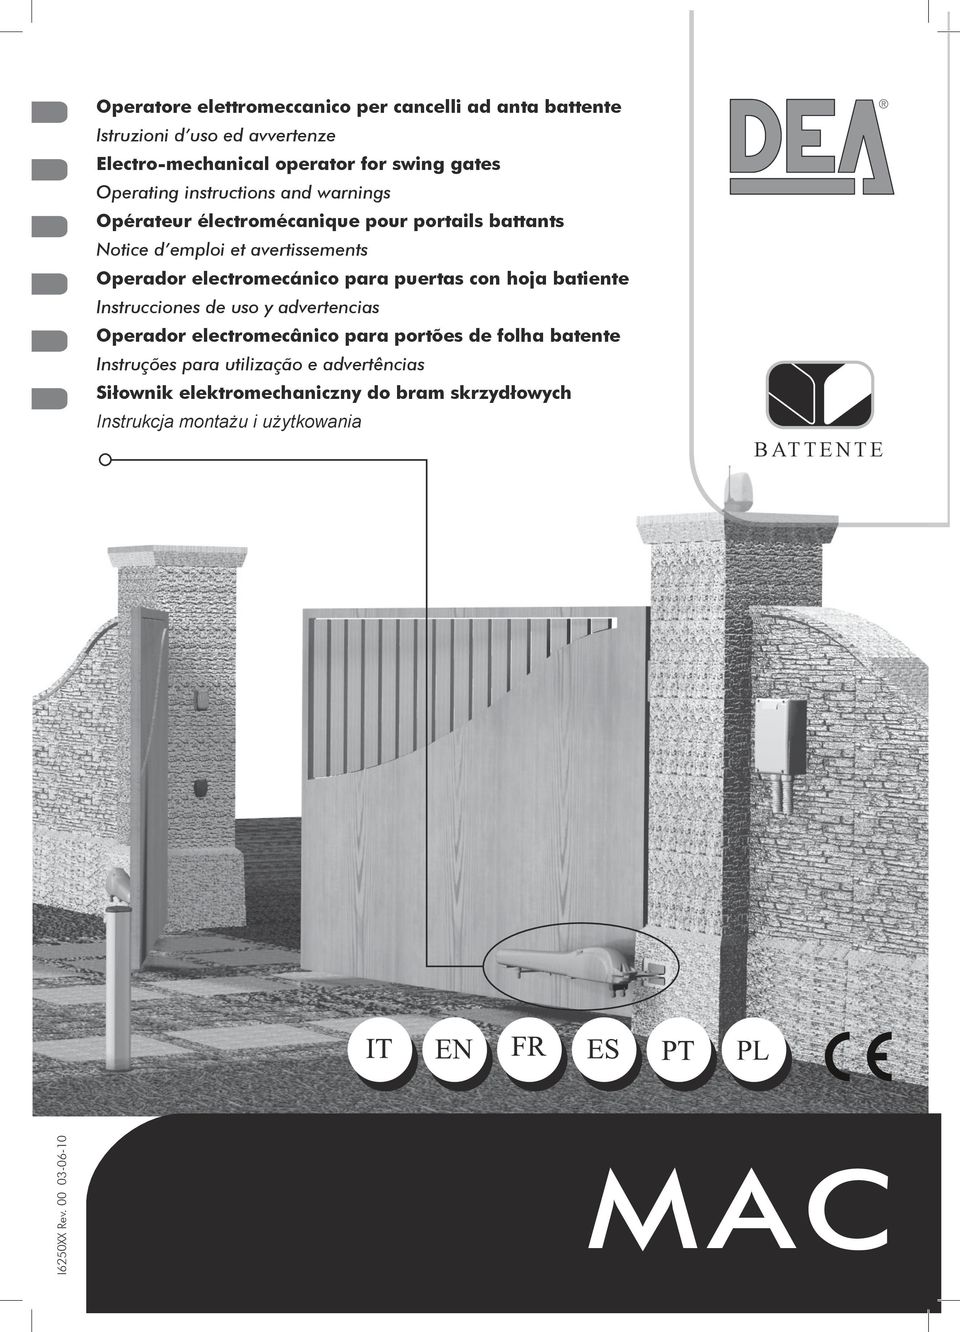 puertas con hoja batiente Instrucciones de uso y advertencias Operador electromecânico para portões de folha batente Instruções para